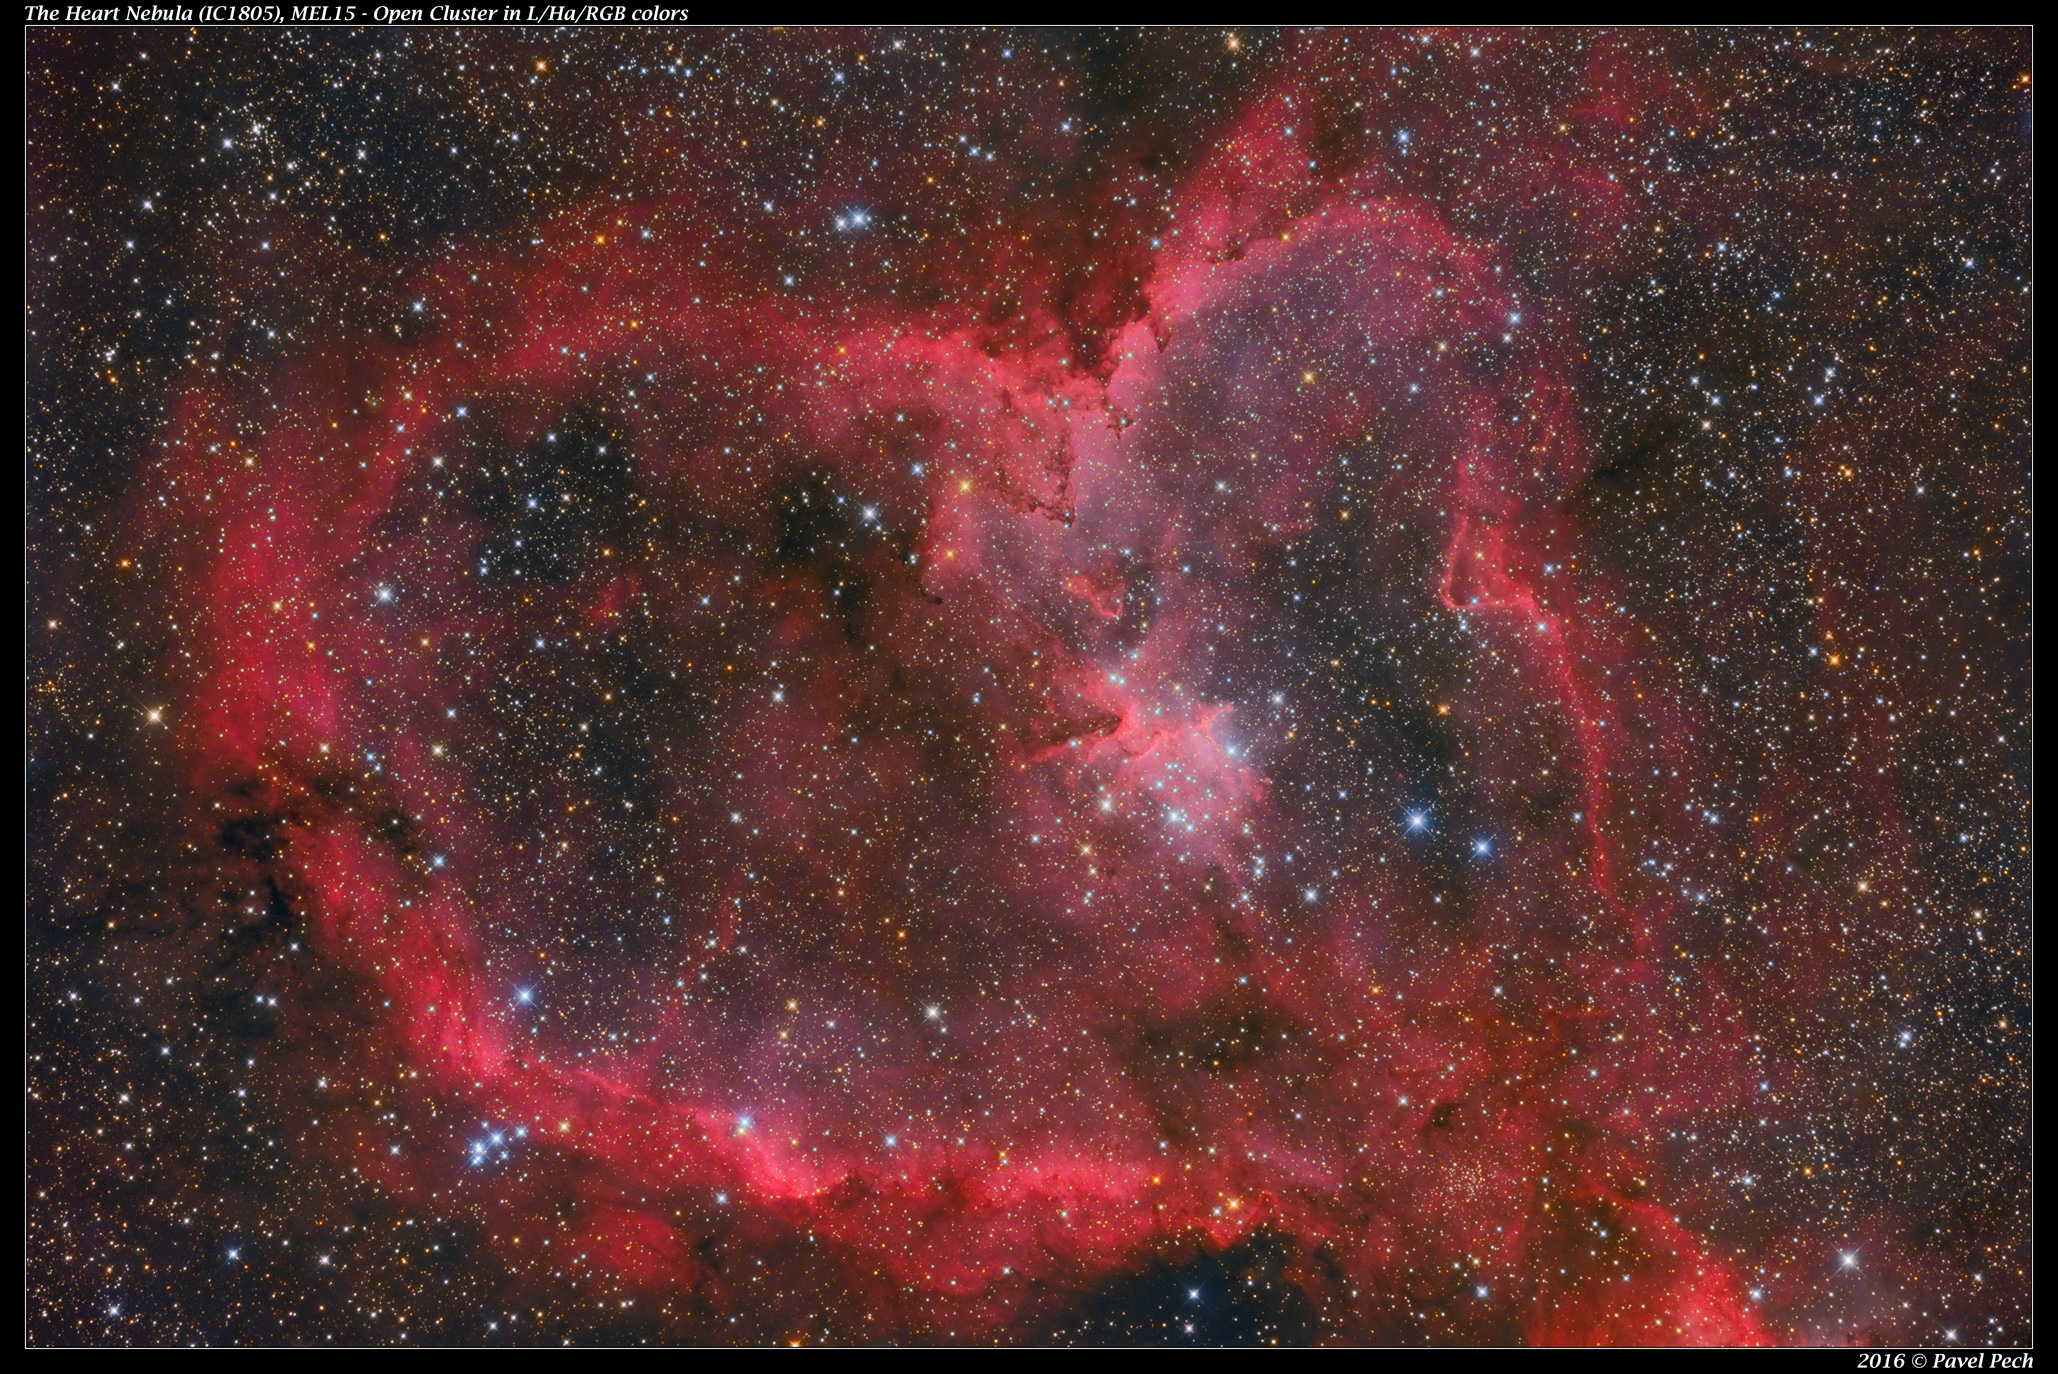 The Heart Nebula (IC1805, MEL15) - LHaRGB